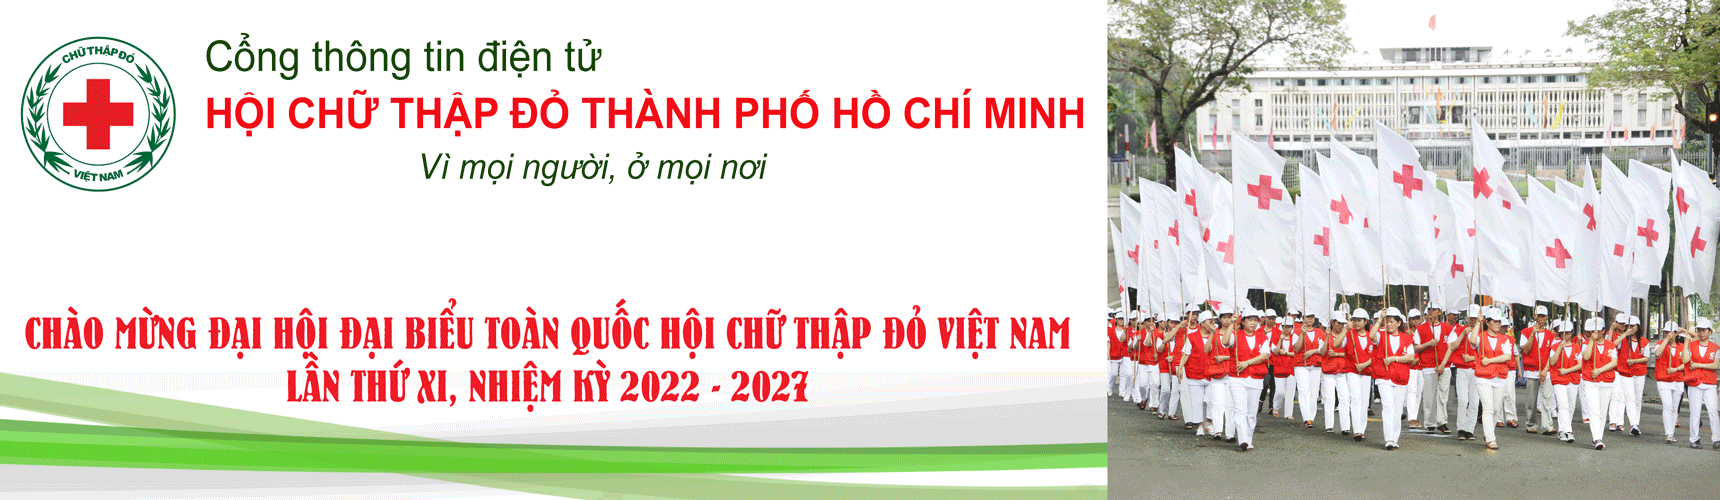 Hội Chữ thập đỏ Thành phố Hồ Chí Minh | Quận 4 đẩy mạnh các hoạt động chăm lo an sinh xã hội